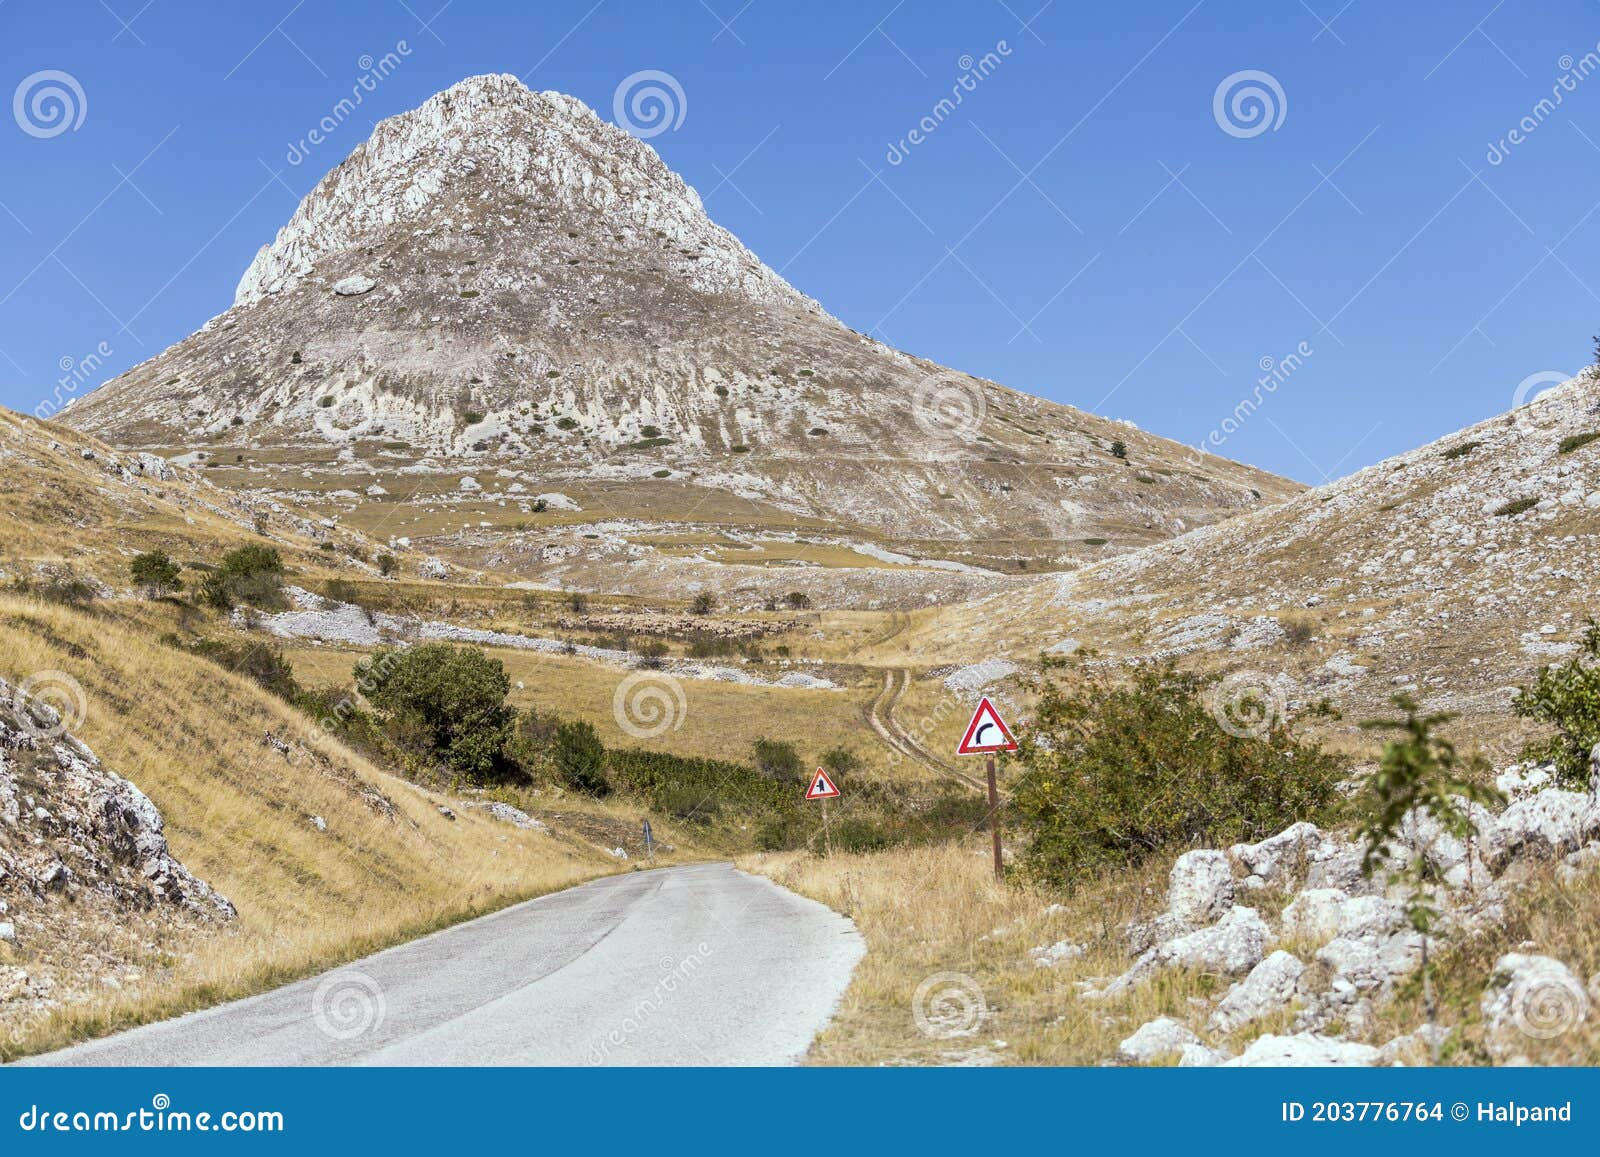 mountain road and camicia peak, near capo la serra pass, abruzzo, italy